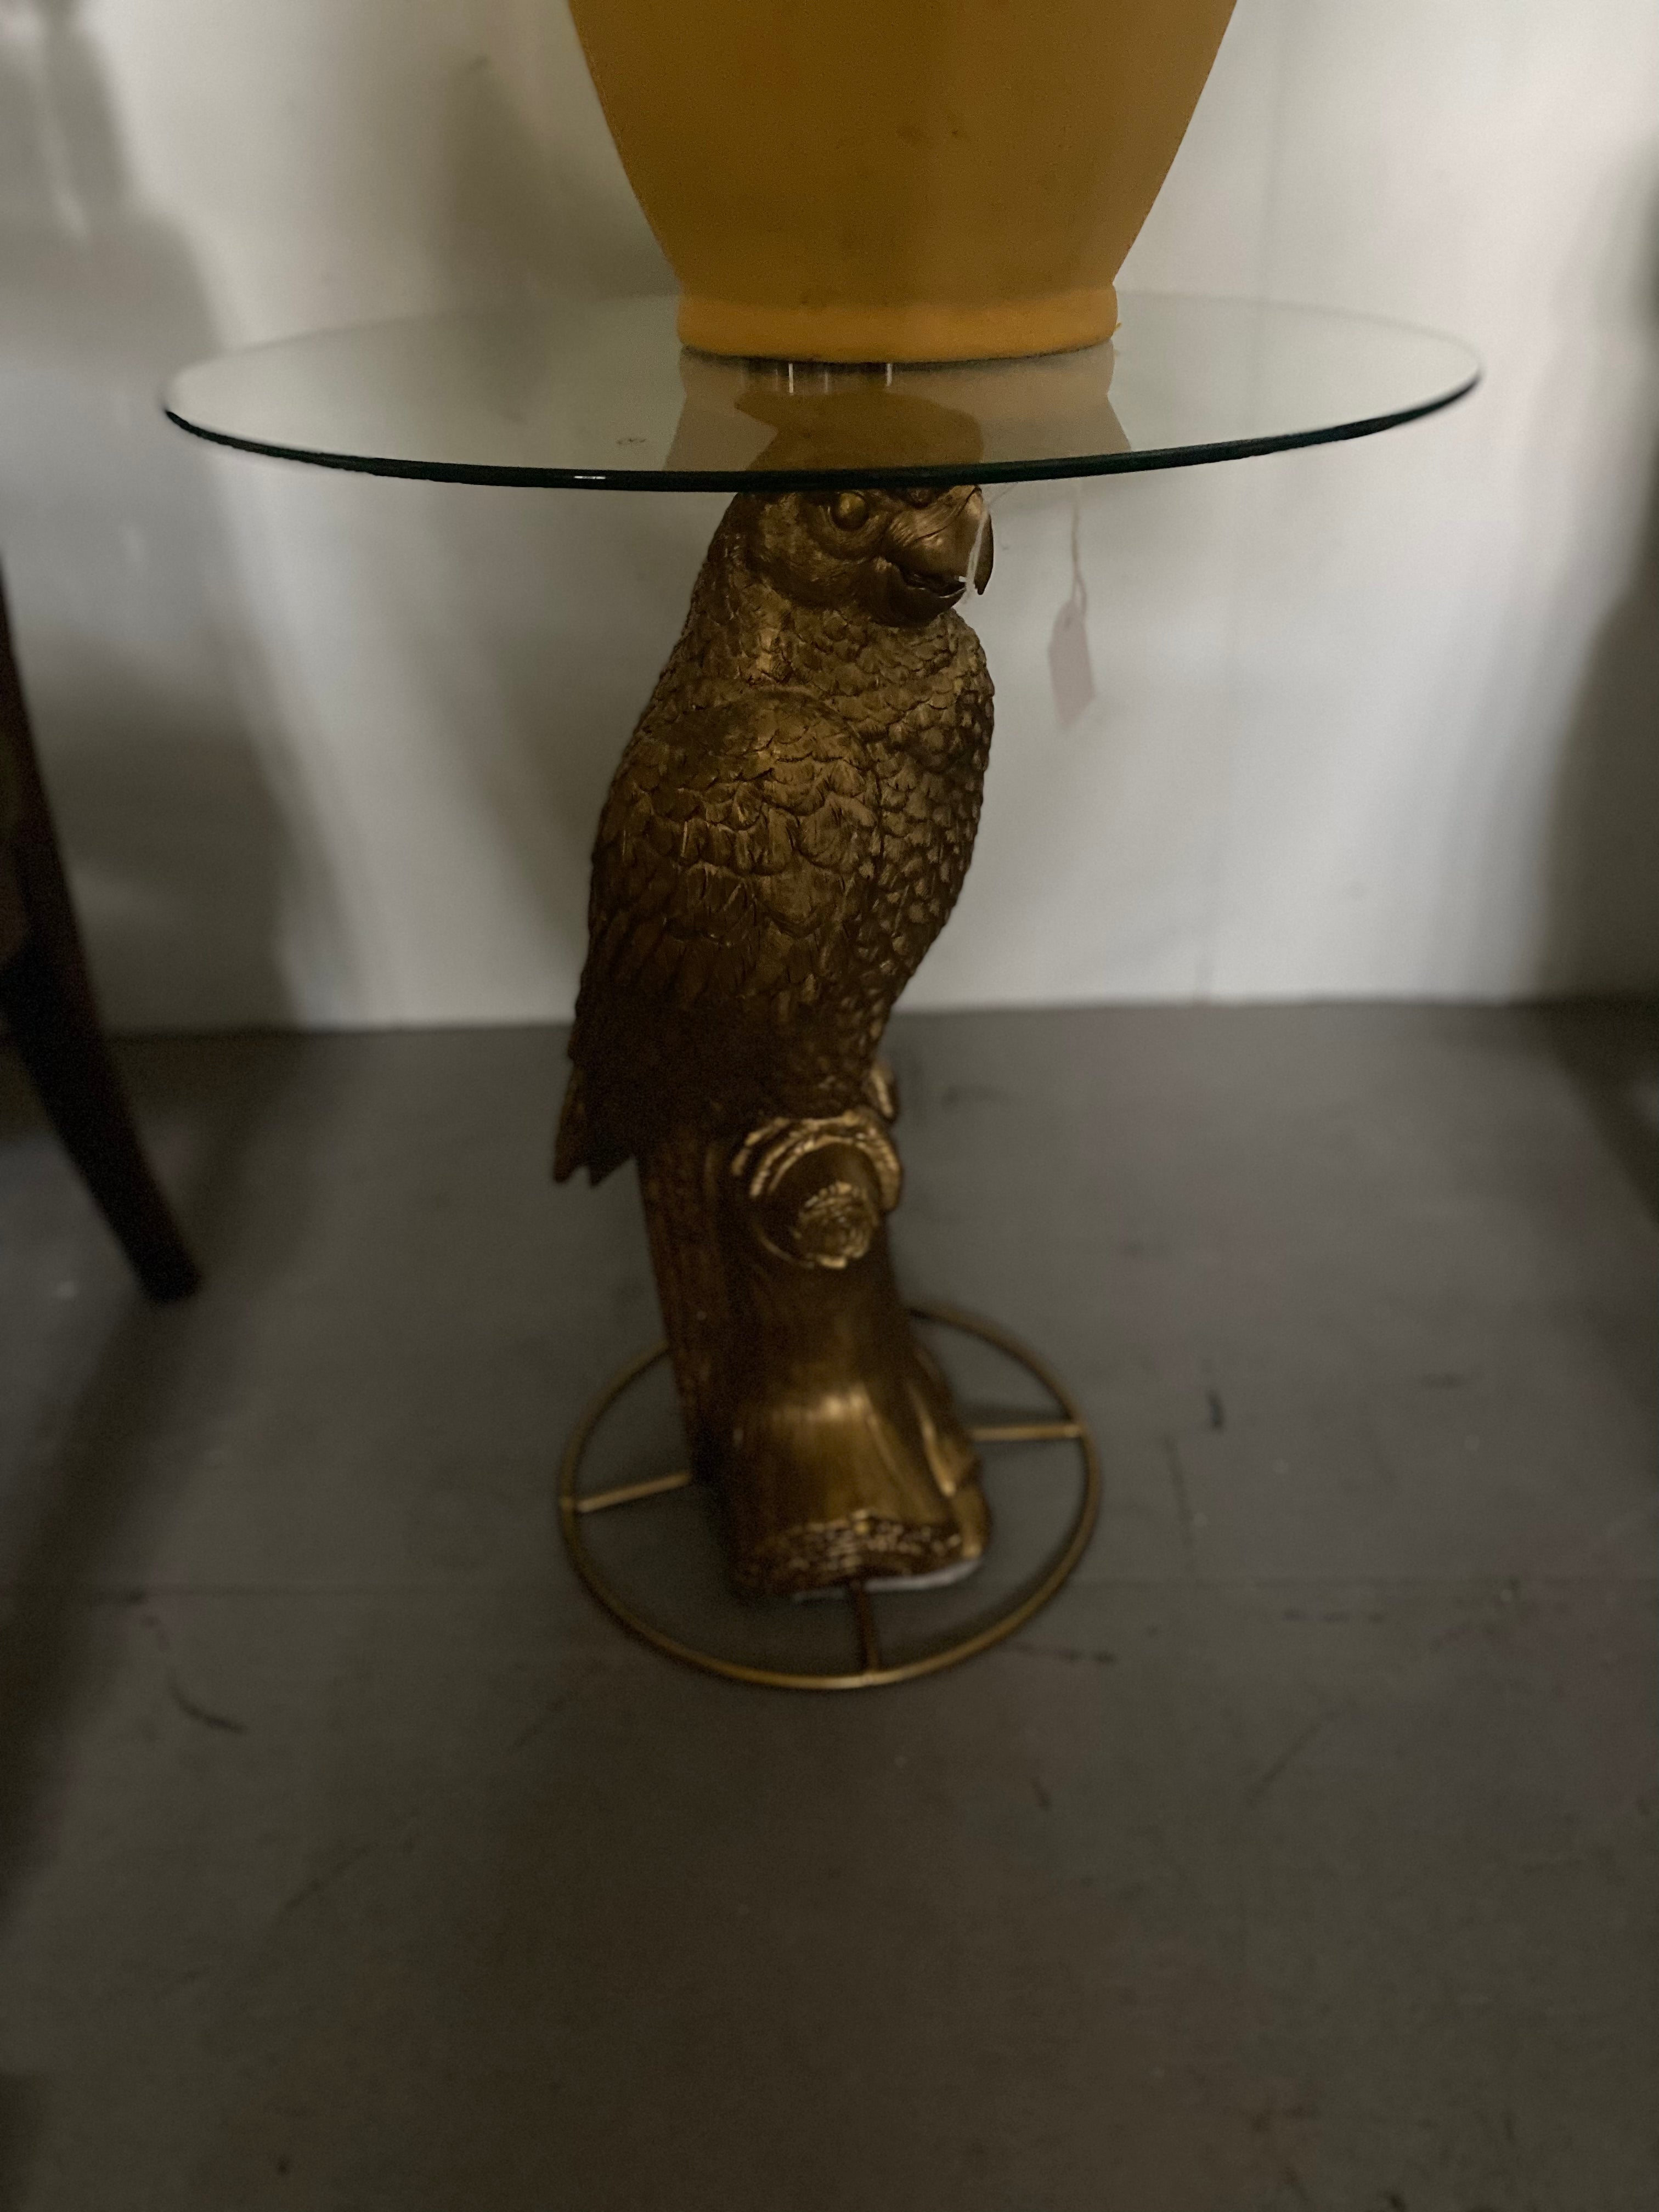 Glazen tafel met papegaai 🦜 poot.